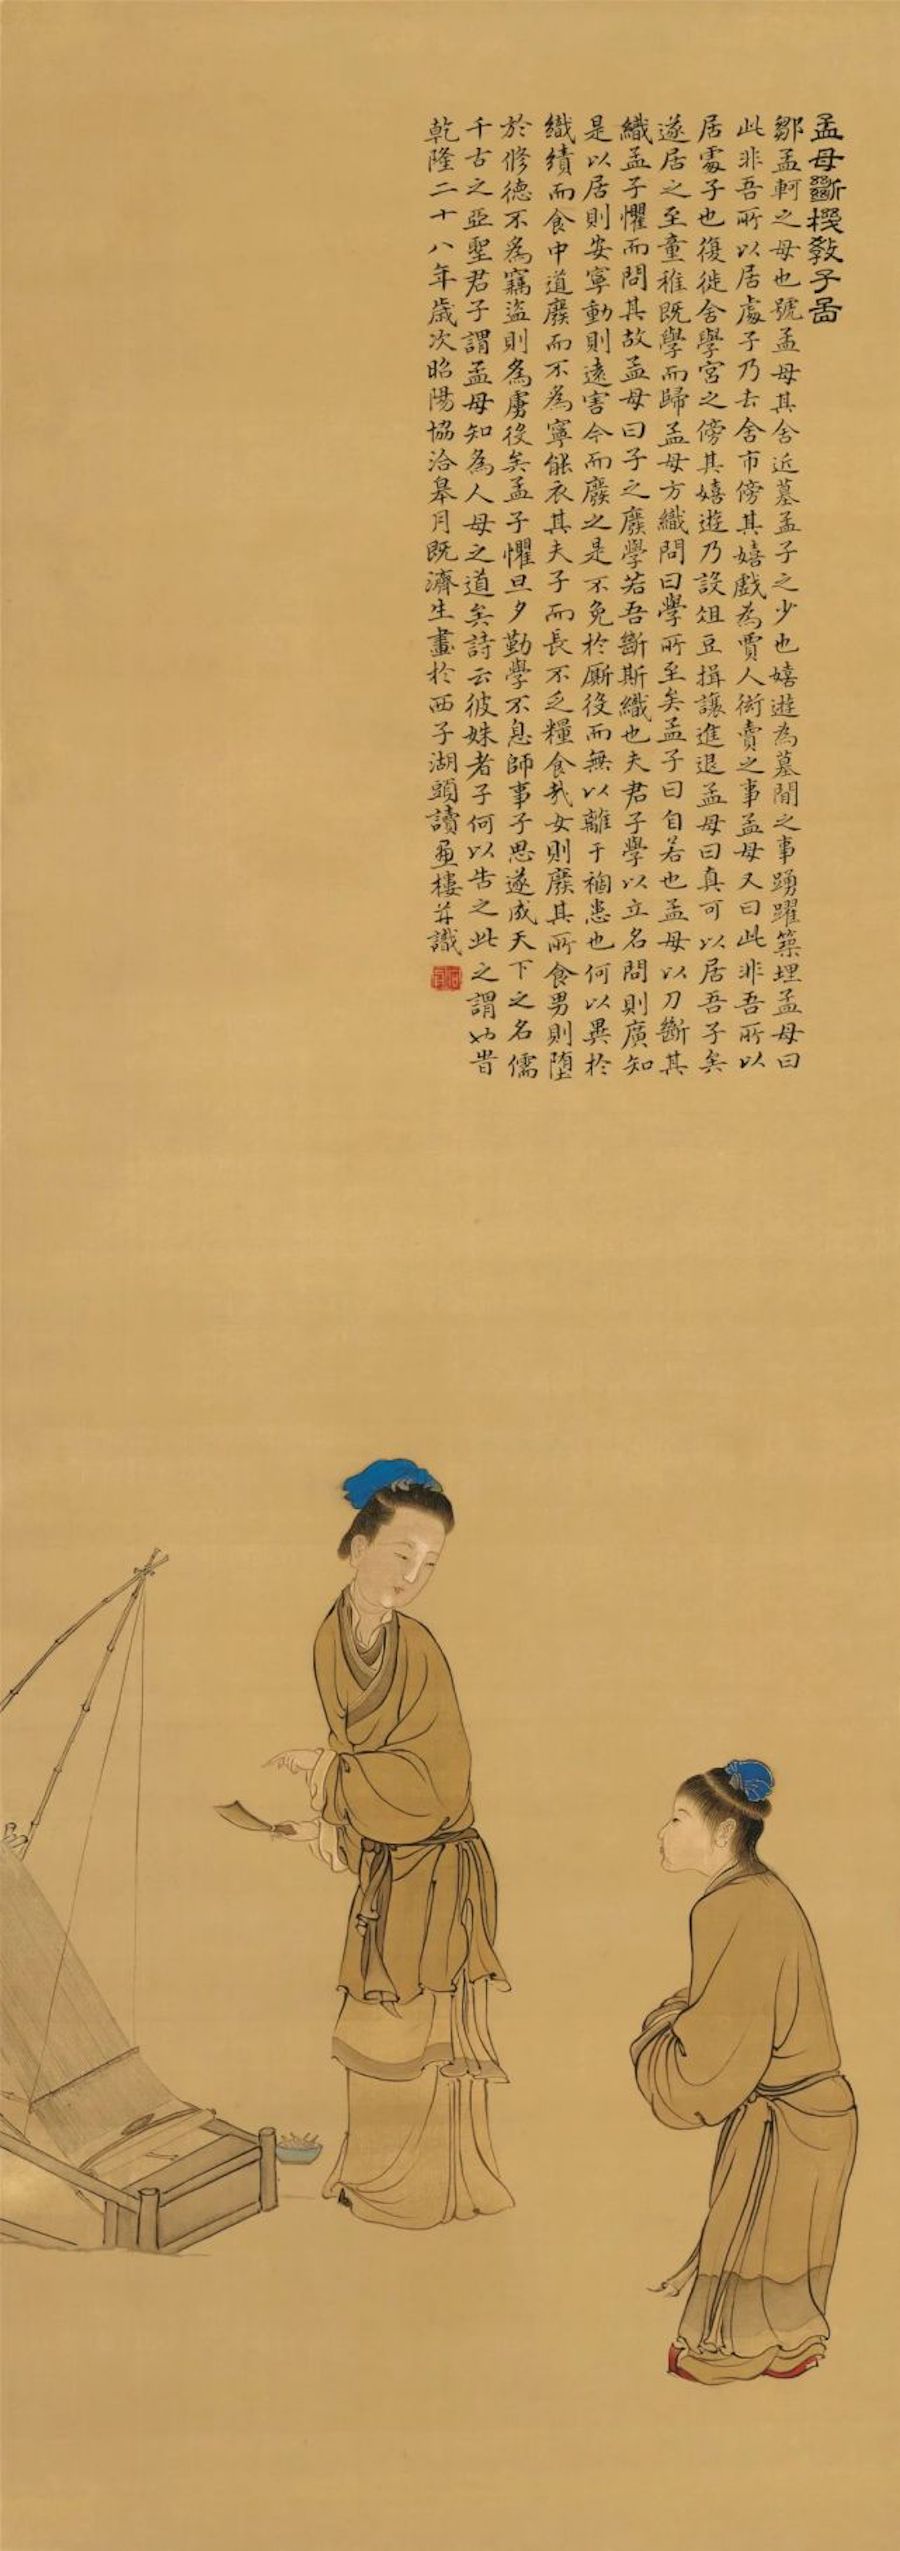 清 康涛《孟母断机教子图》北京故宫博物院藏